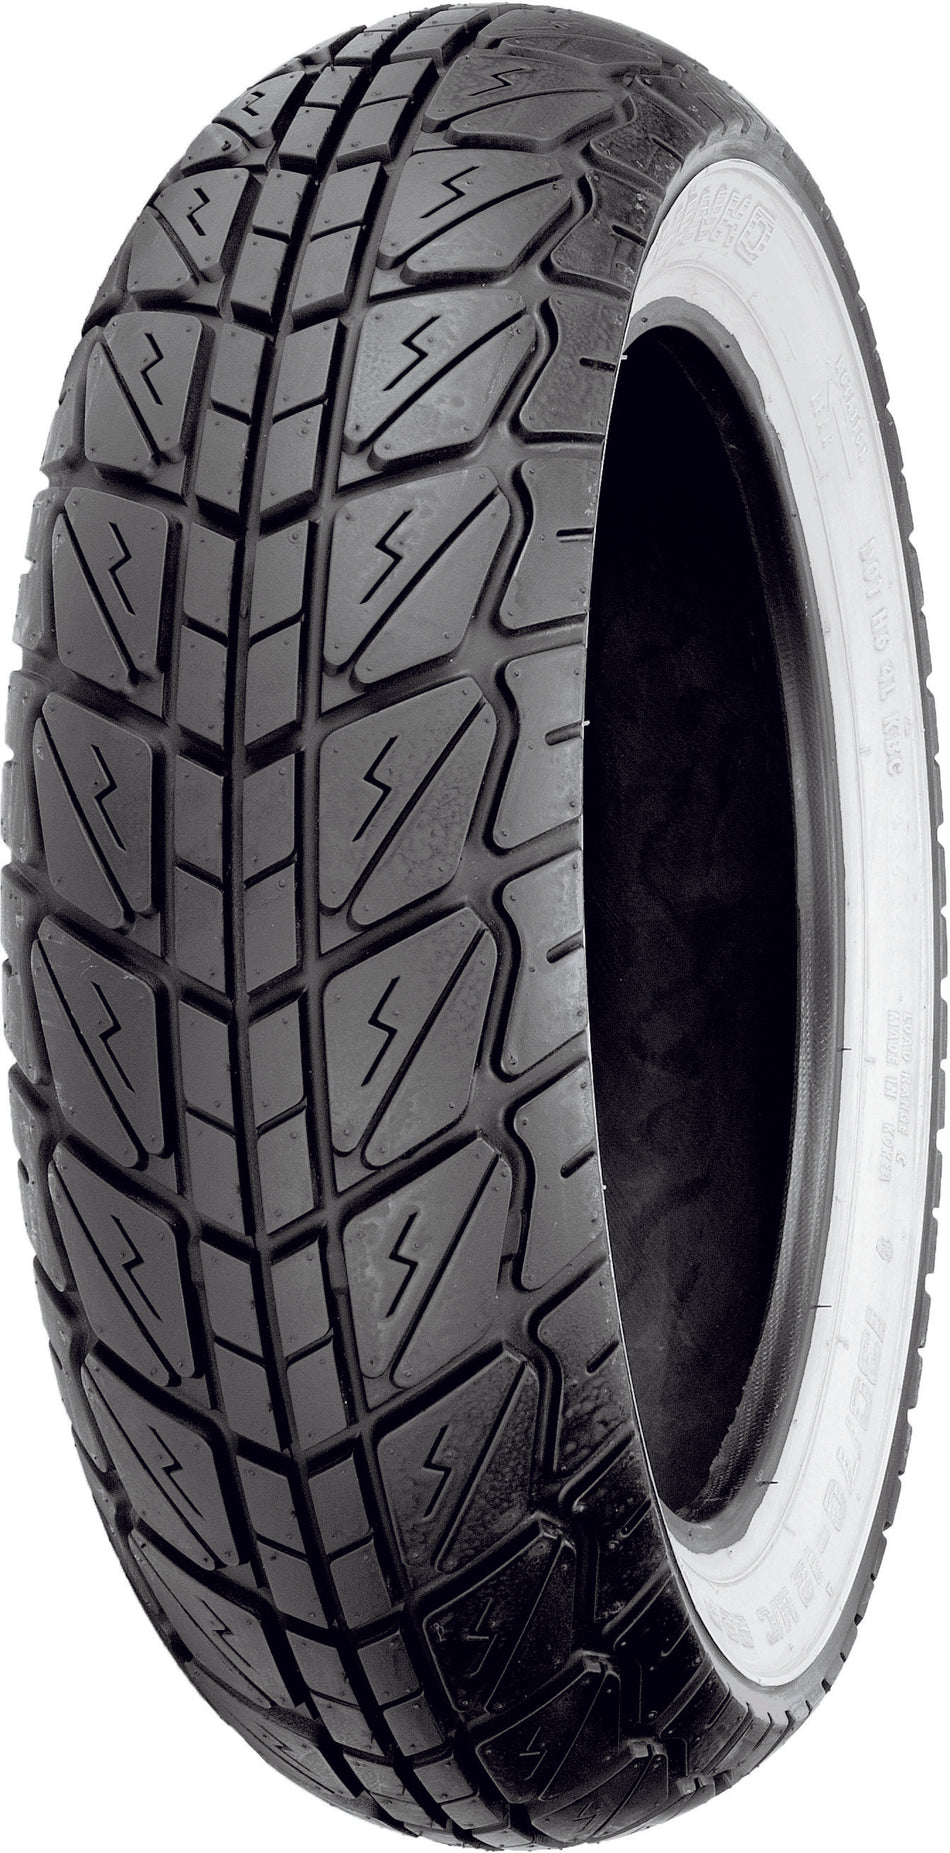 SHINKO Tire 723 Series Front/Rear 110/70-12 47p Bias Tl W/W 87-4258